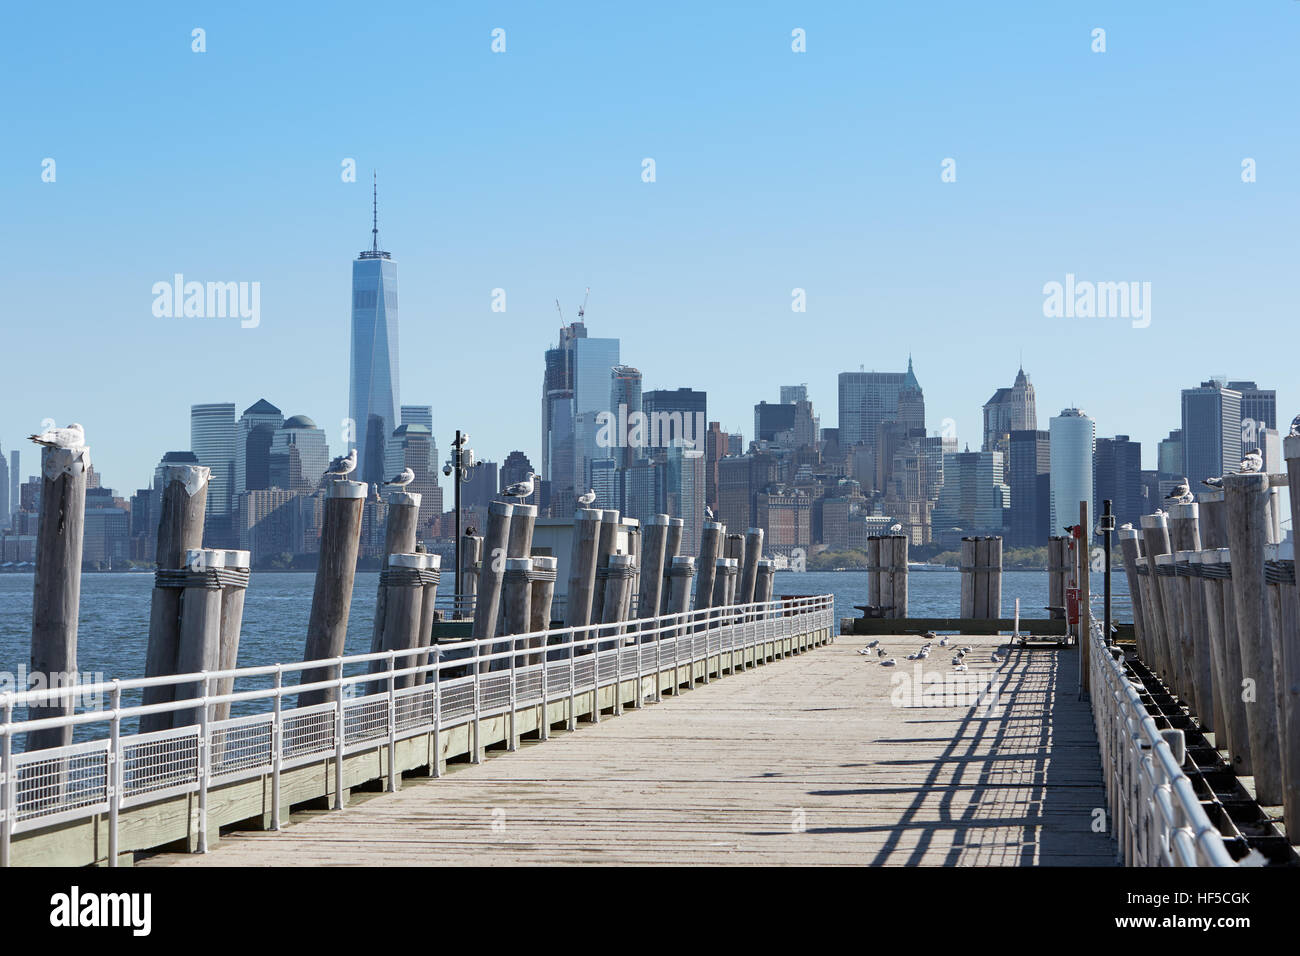 Pier vide et New York city skyline view avec mouettes dans une journée ensoleillée Banque D'Images